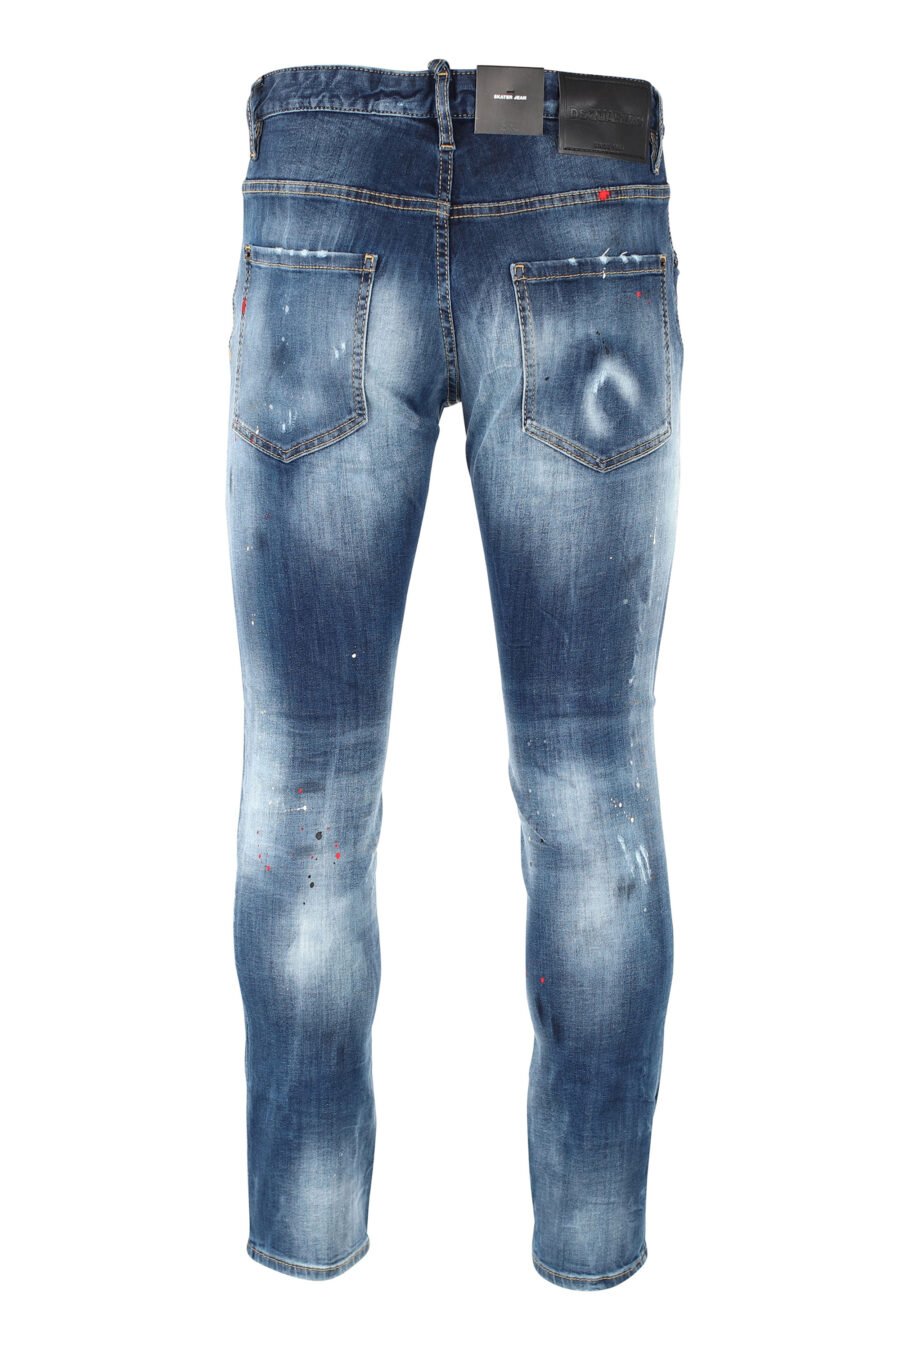 Pantalón vaquero "Skater" azul oscuro con rotos - IMG 0835